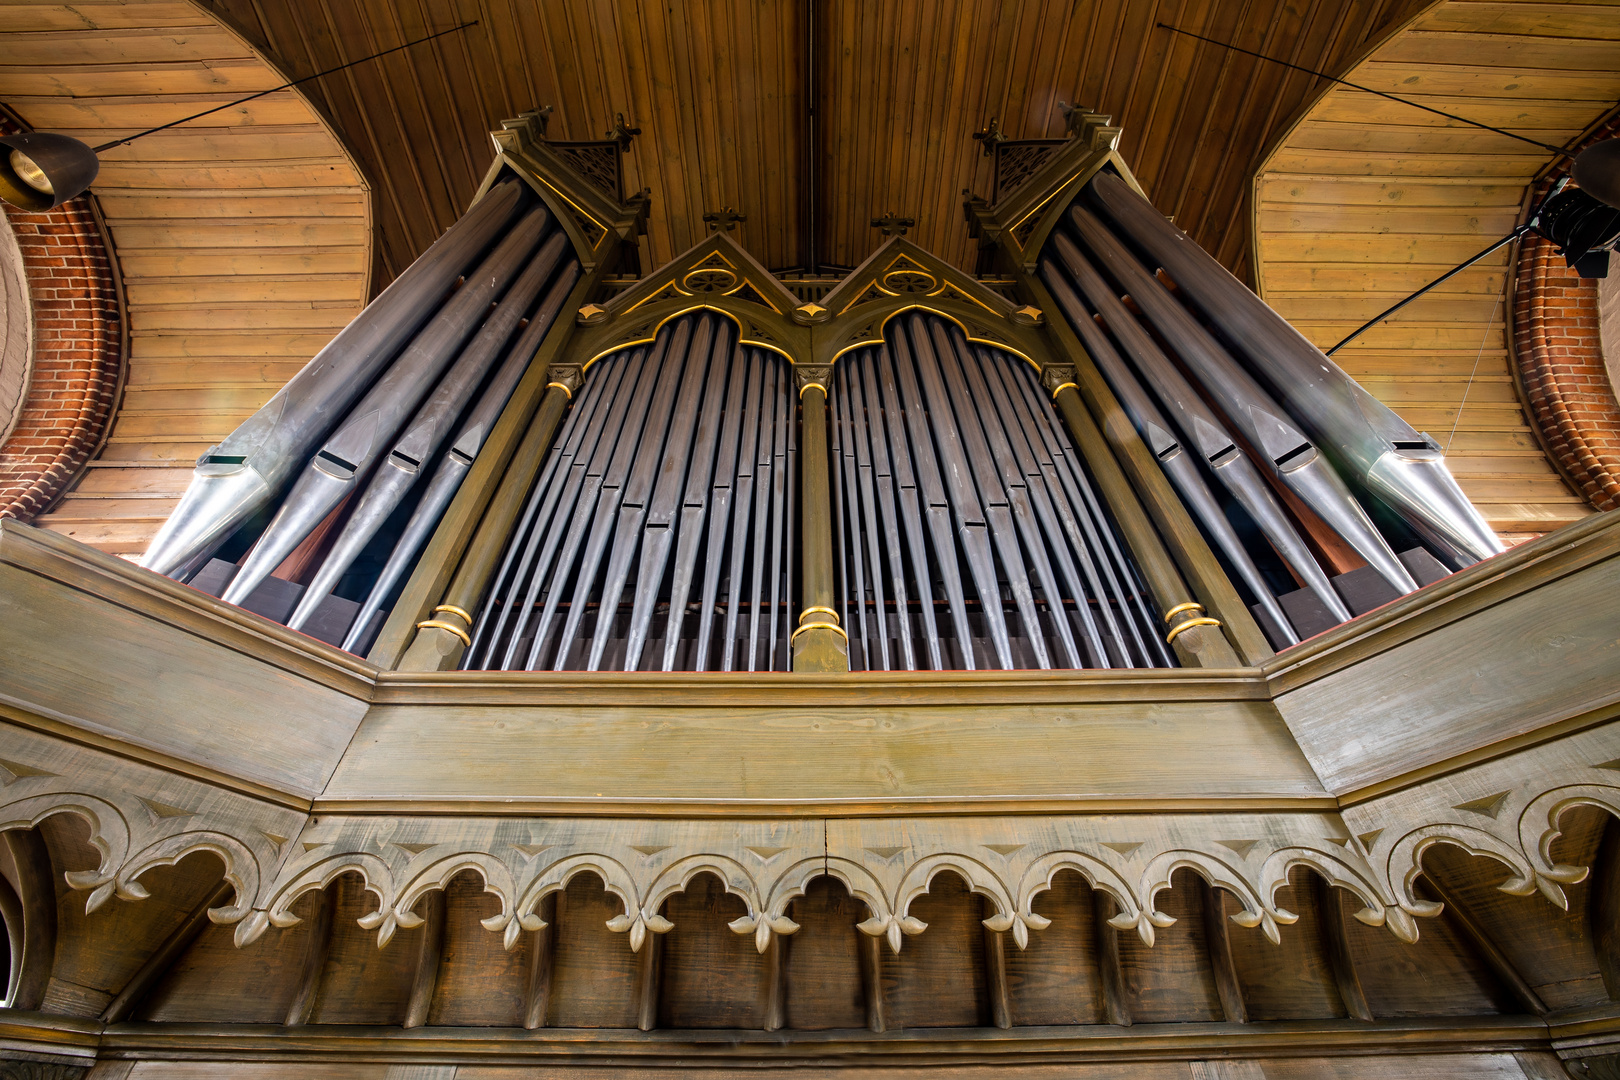 Die Janke-Orgel 